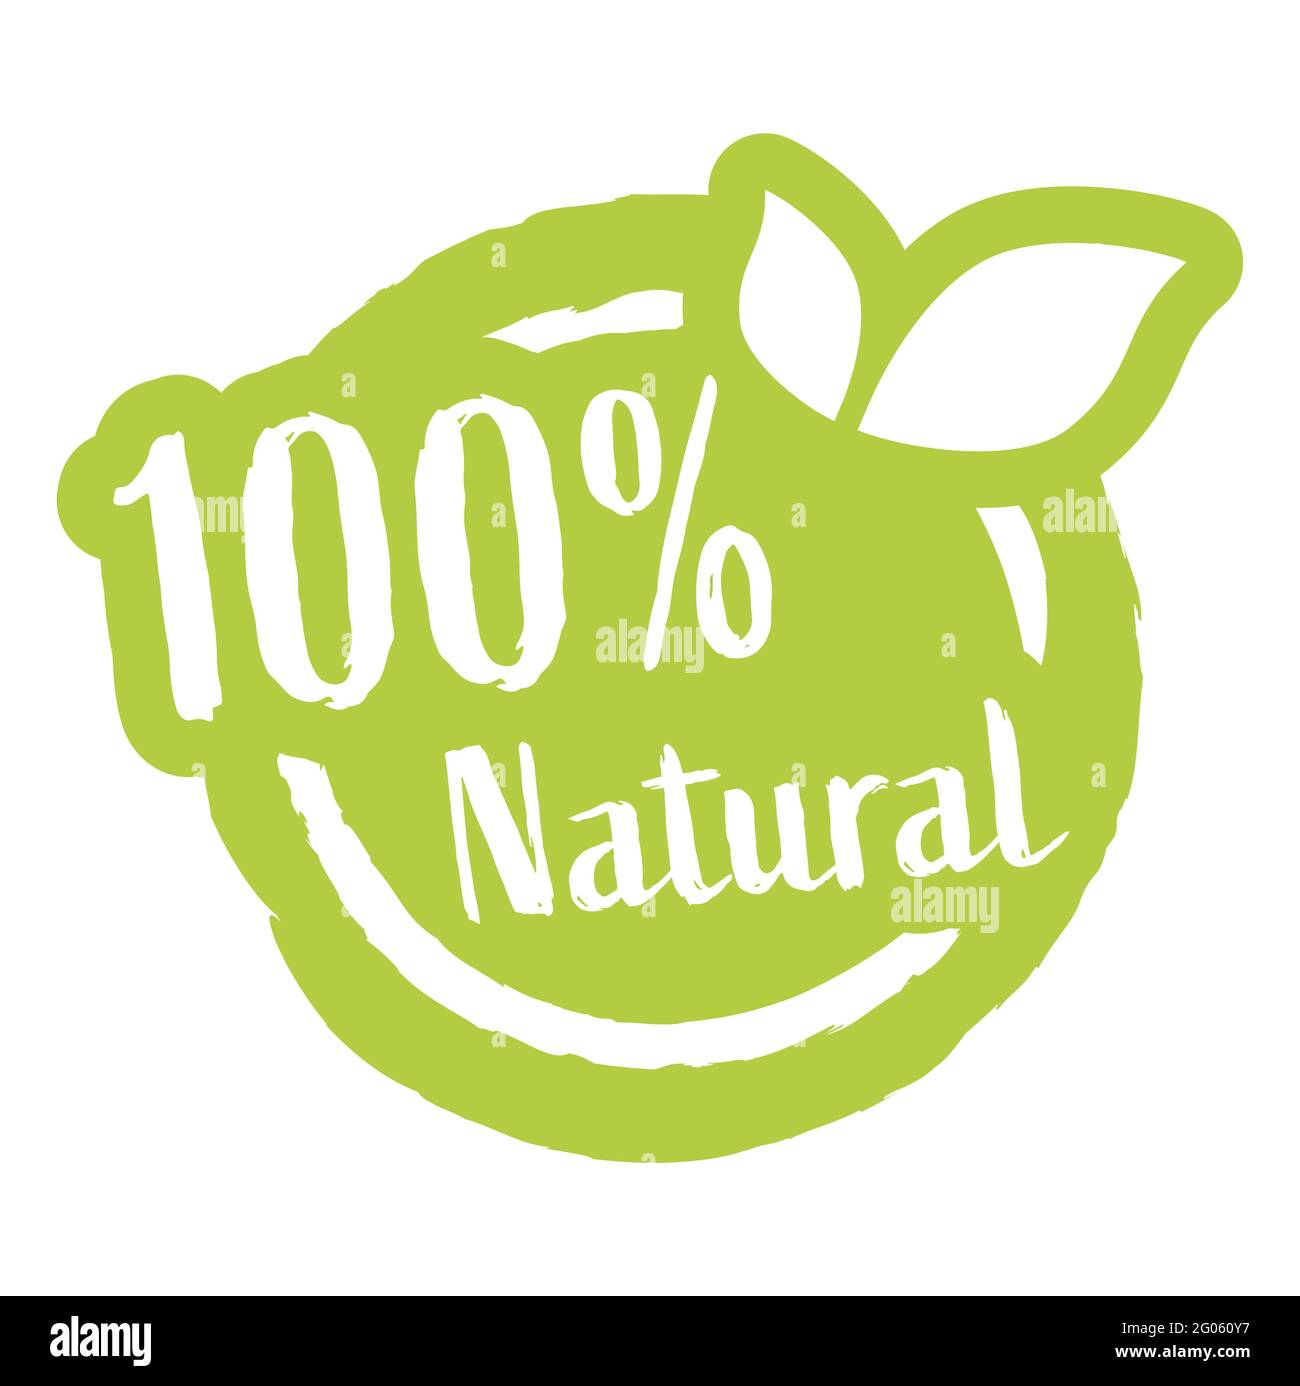 fichier vectoriel eps timbre rond vert moderne avec feuilles, texte blanc 100% naturel Illustration de Vecteur